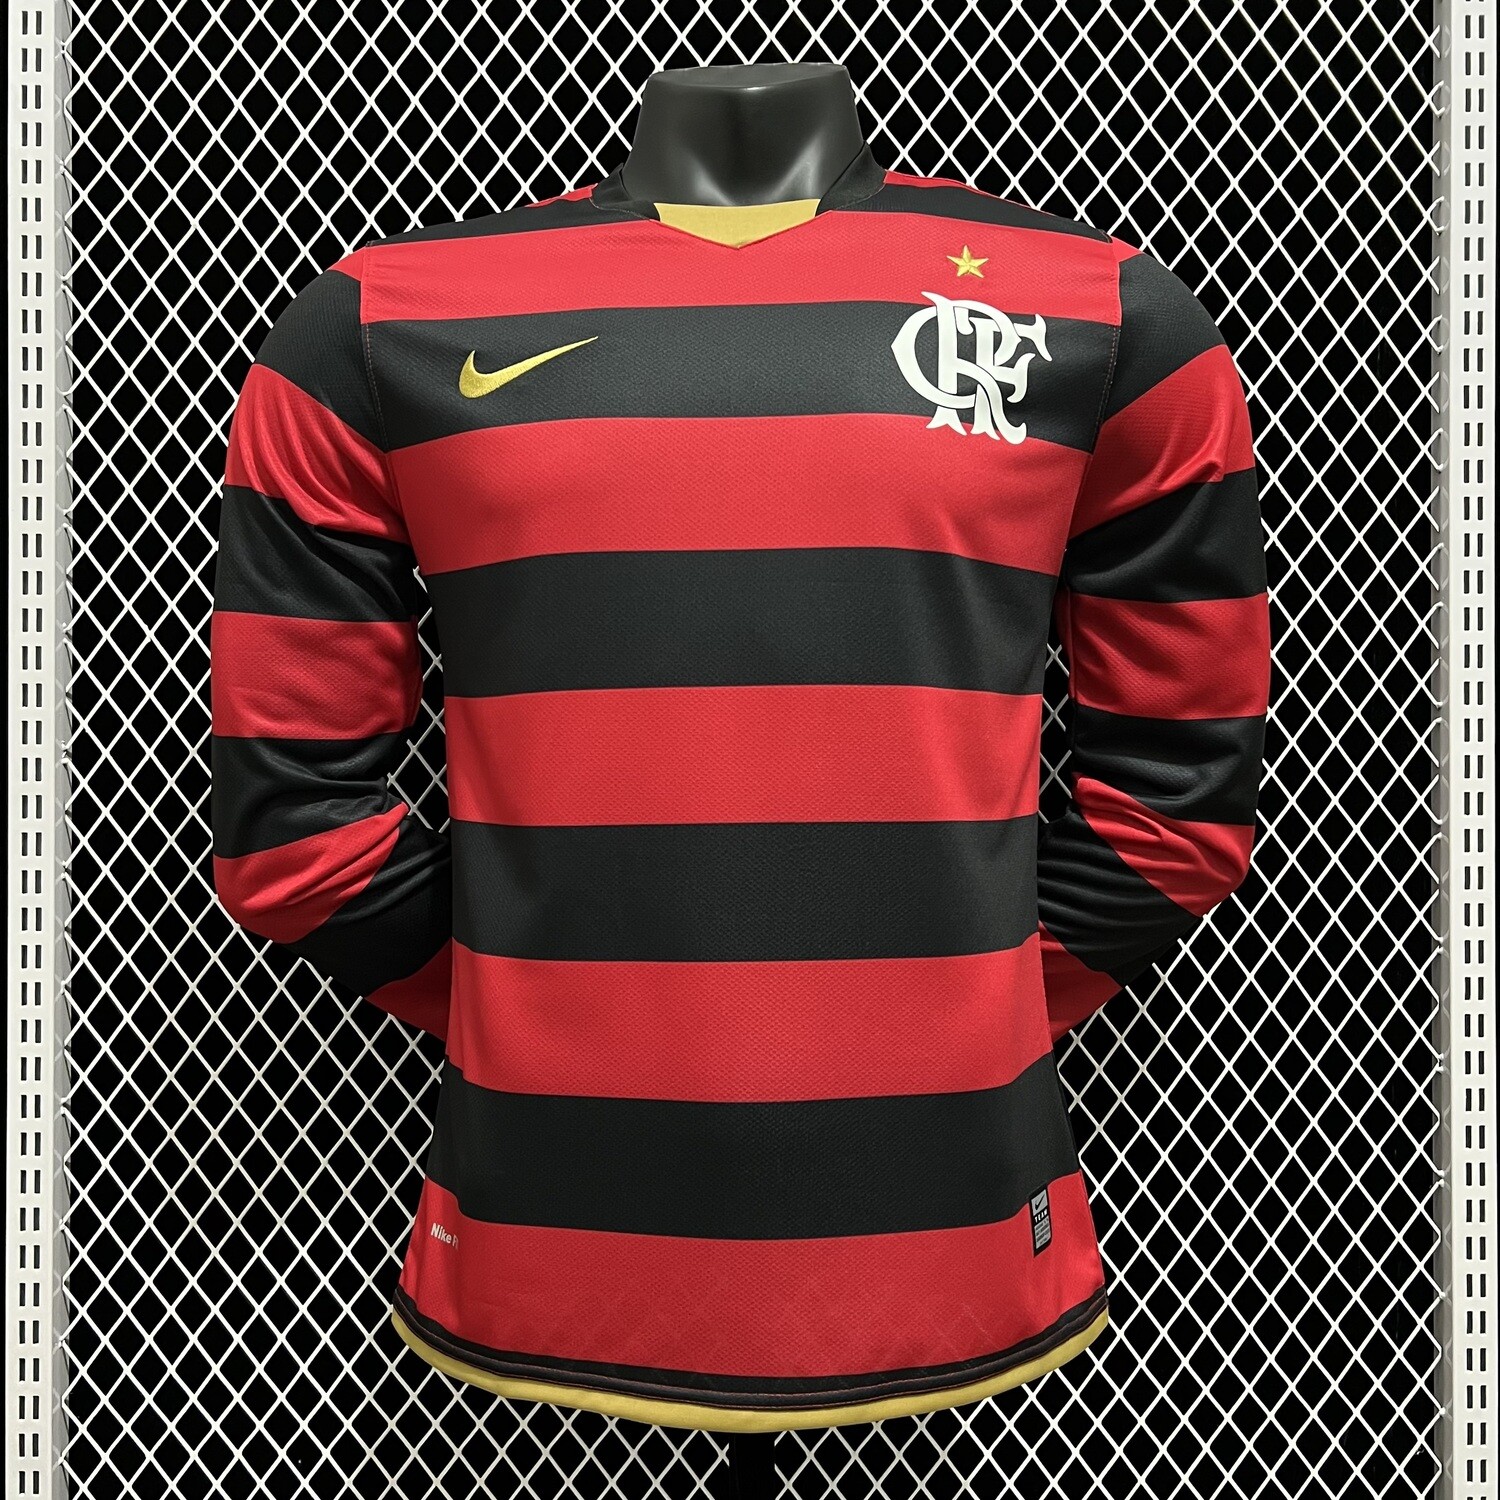 Camisa Flamengo 08/09 Manga Longa